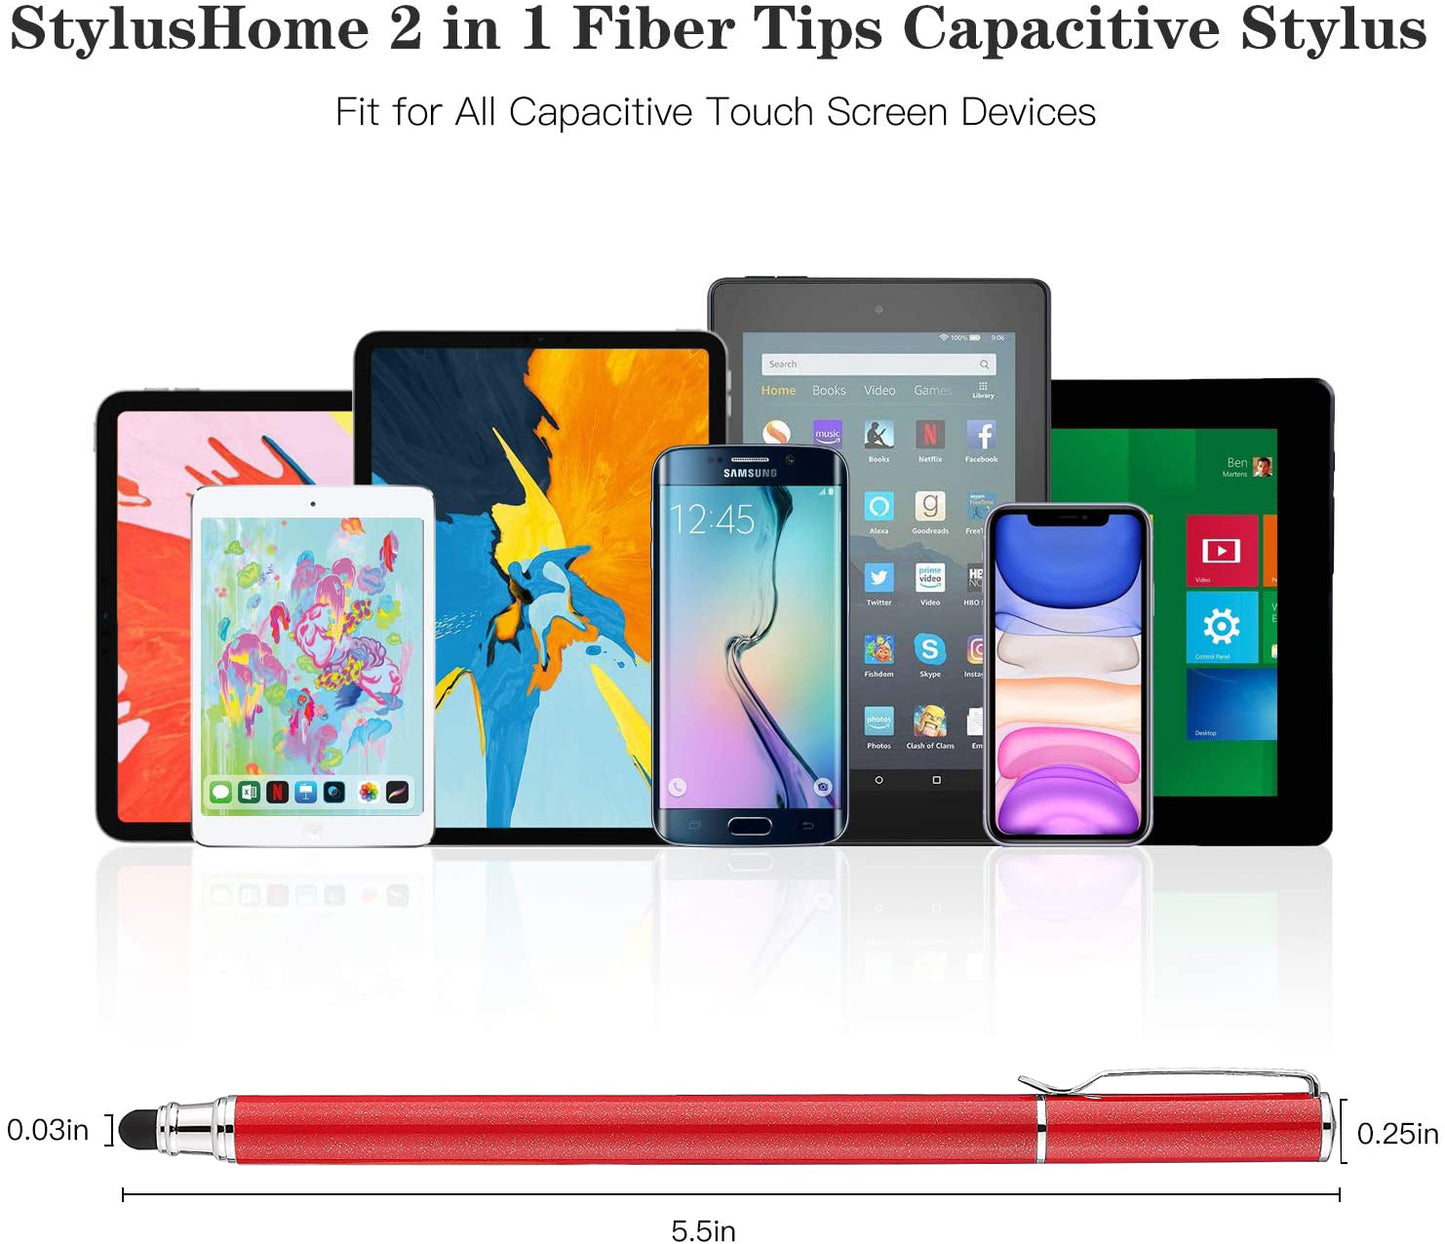 Red Stylus, Lightweight Aluminum Fiber Tip Touch Screen Pen - NWZ57